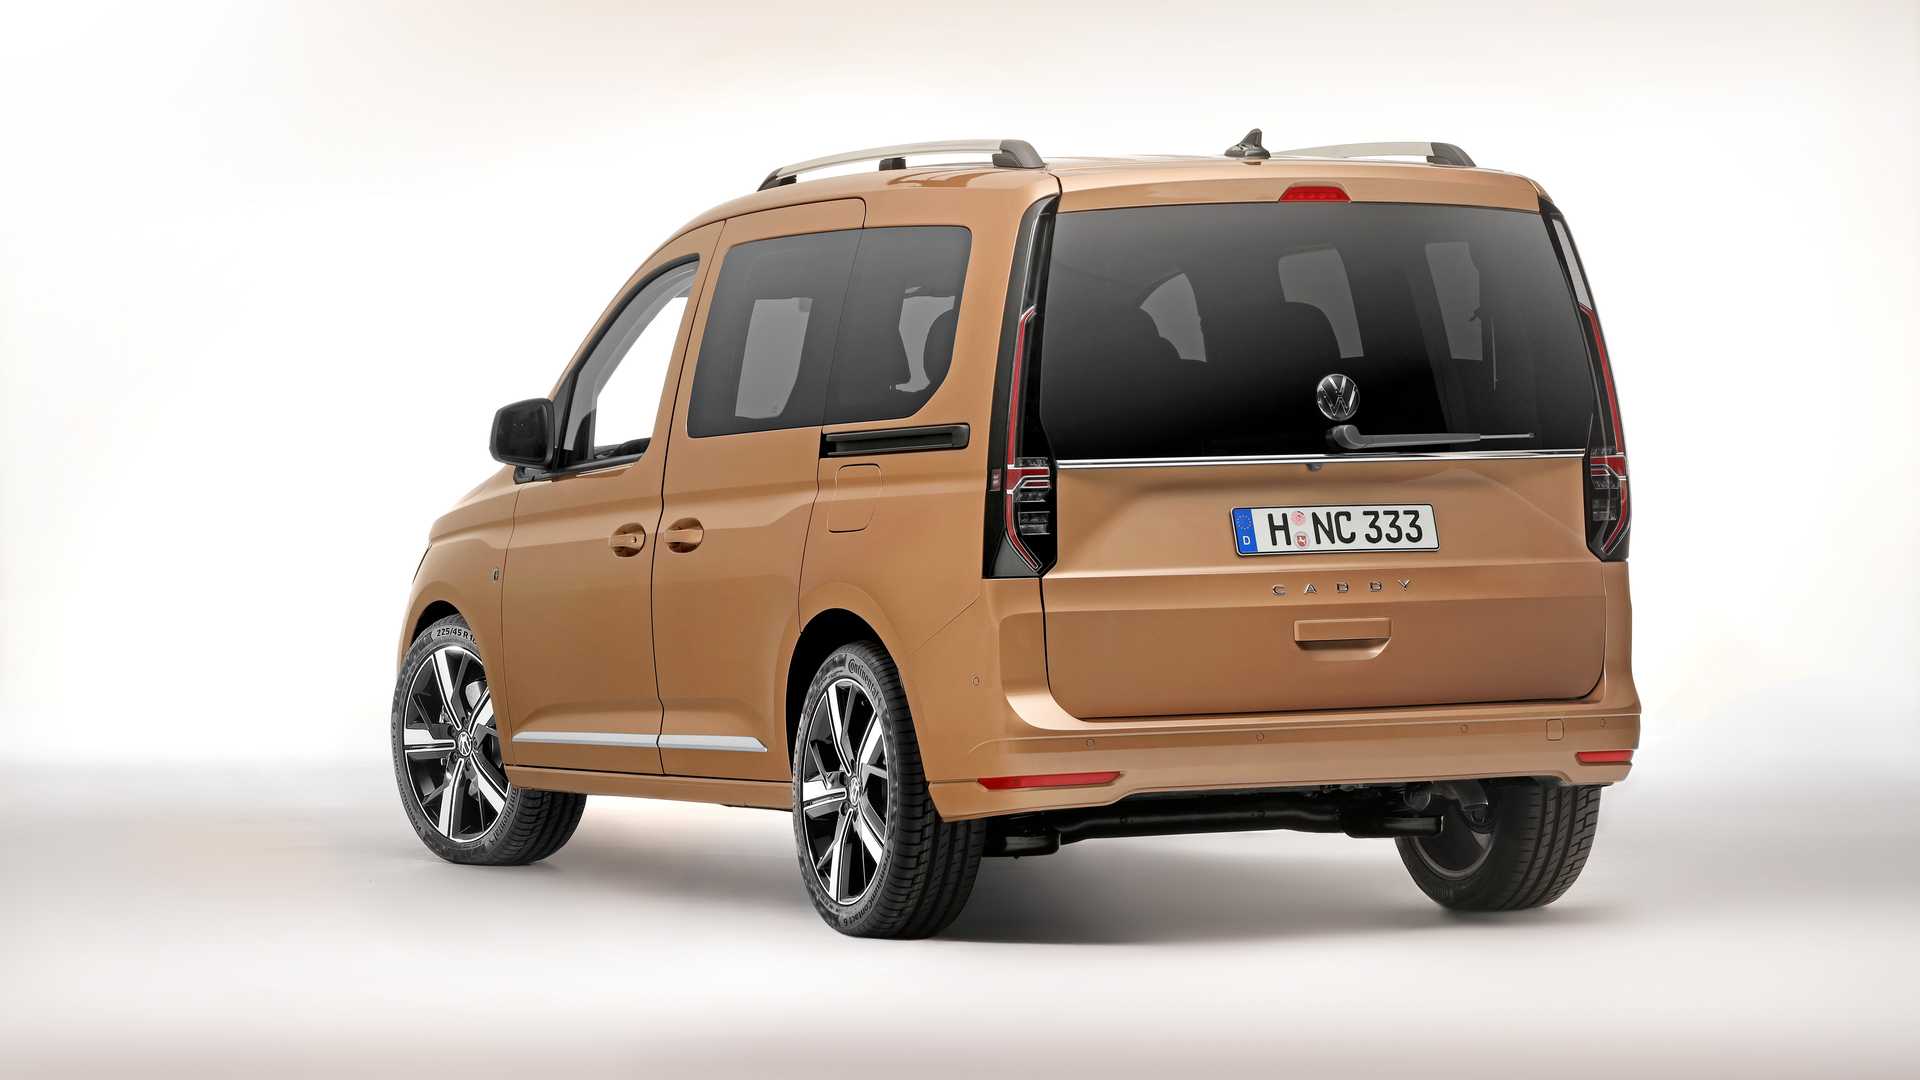 Yeni nesil Volkswagen Caddy Şubat'ta Türkiye'ye gelecek